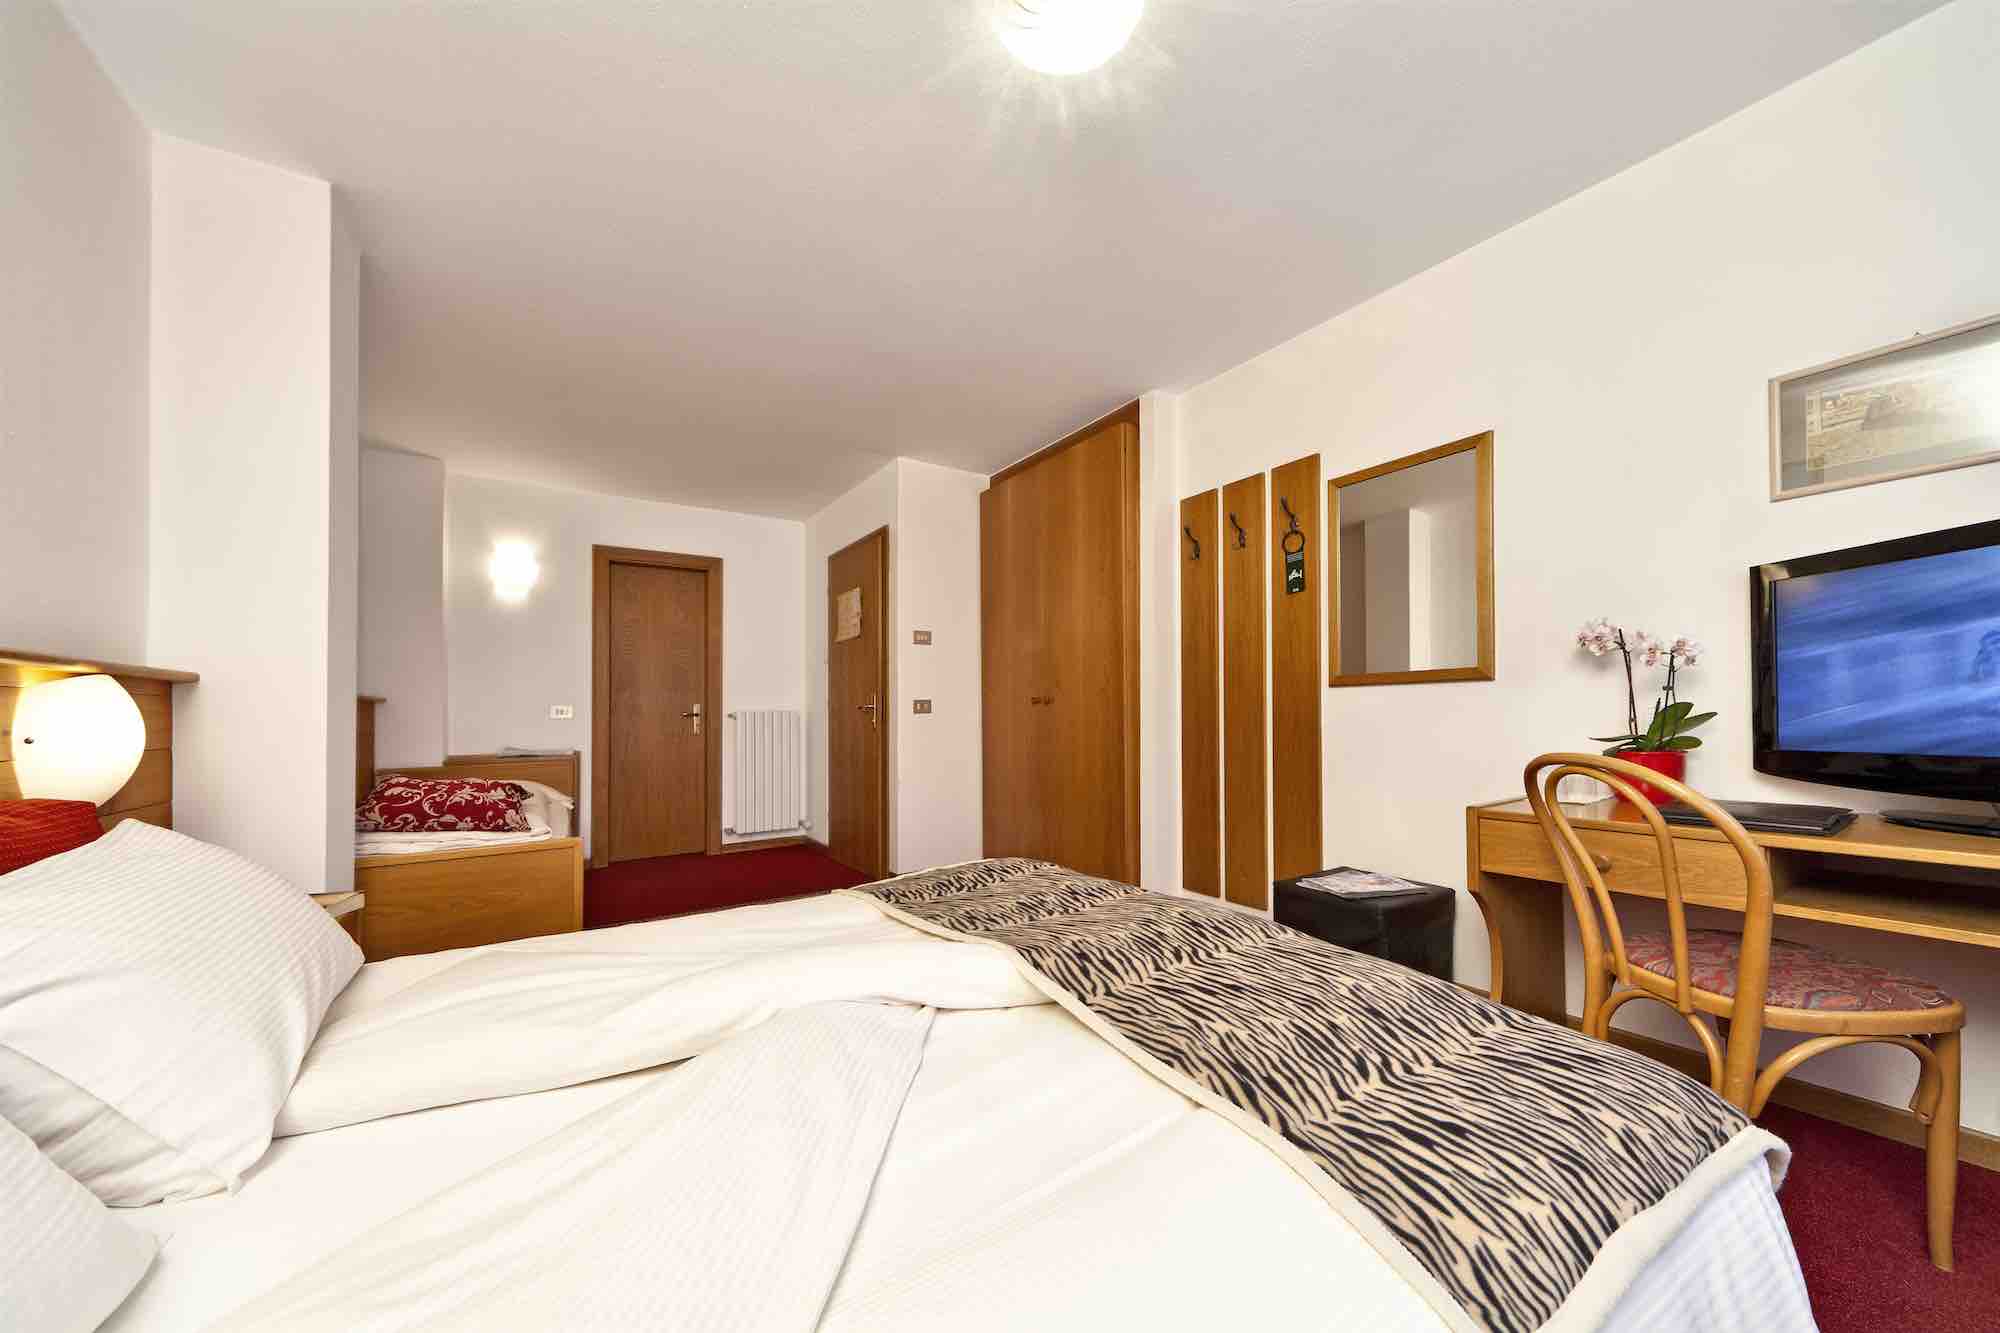 Hotel Livigno - Via Ostaria N.573, Livigno 23041 - Room - Comfort 3